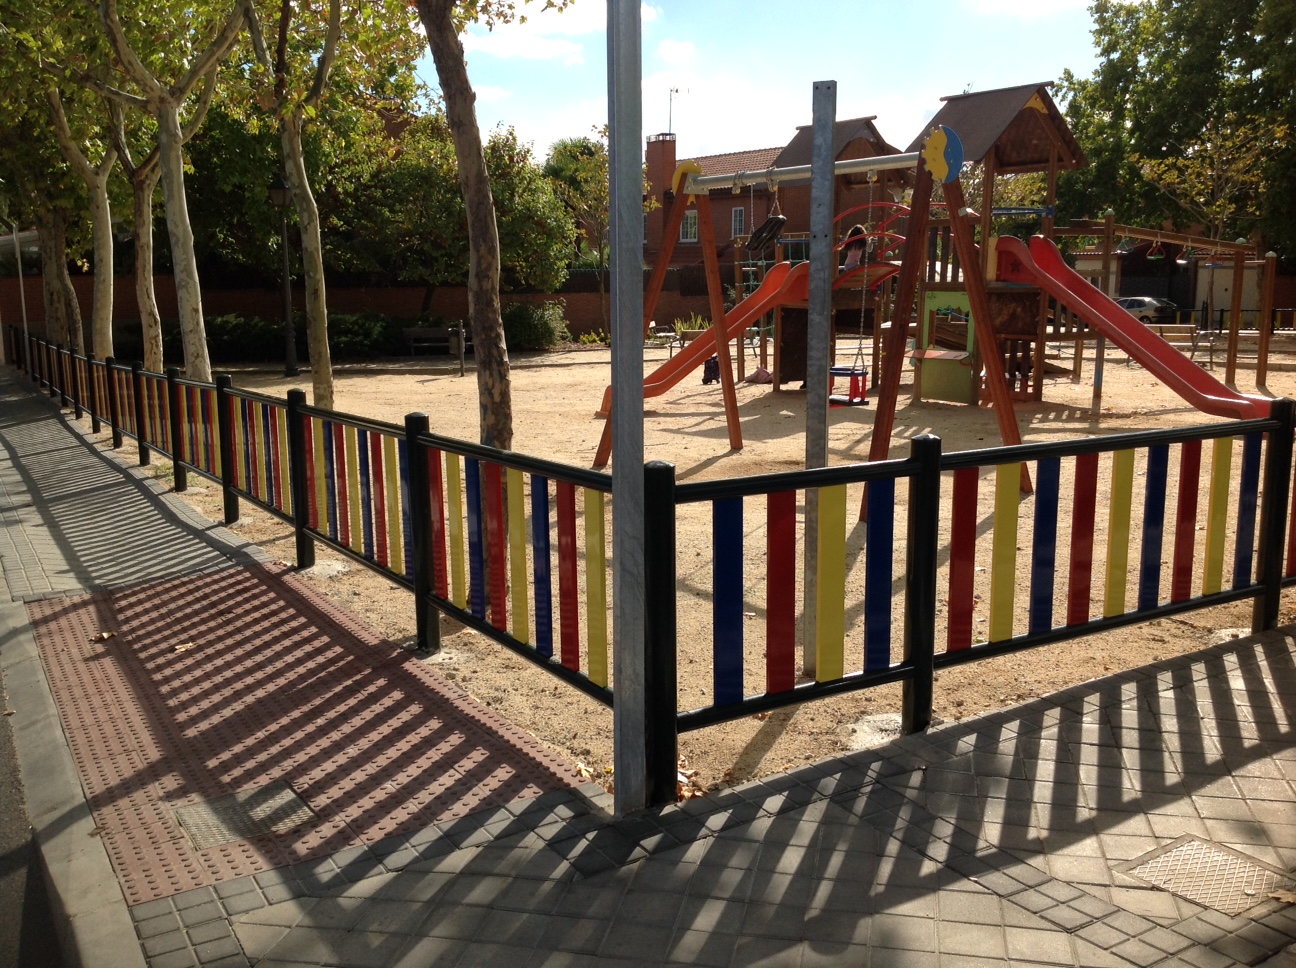 Valla Metalica De Colores Urbadep - Parques infantiles - Mobiliario urbano